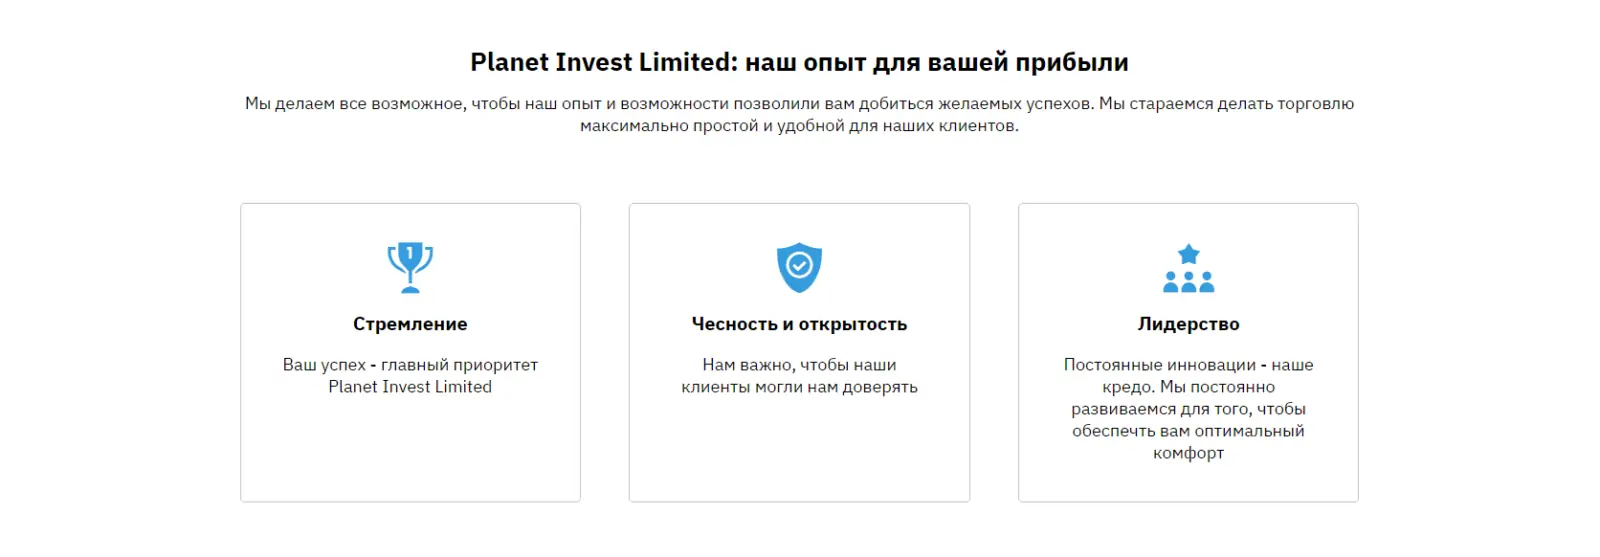 Основные сведения о компании Planet Invest Limited